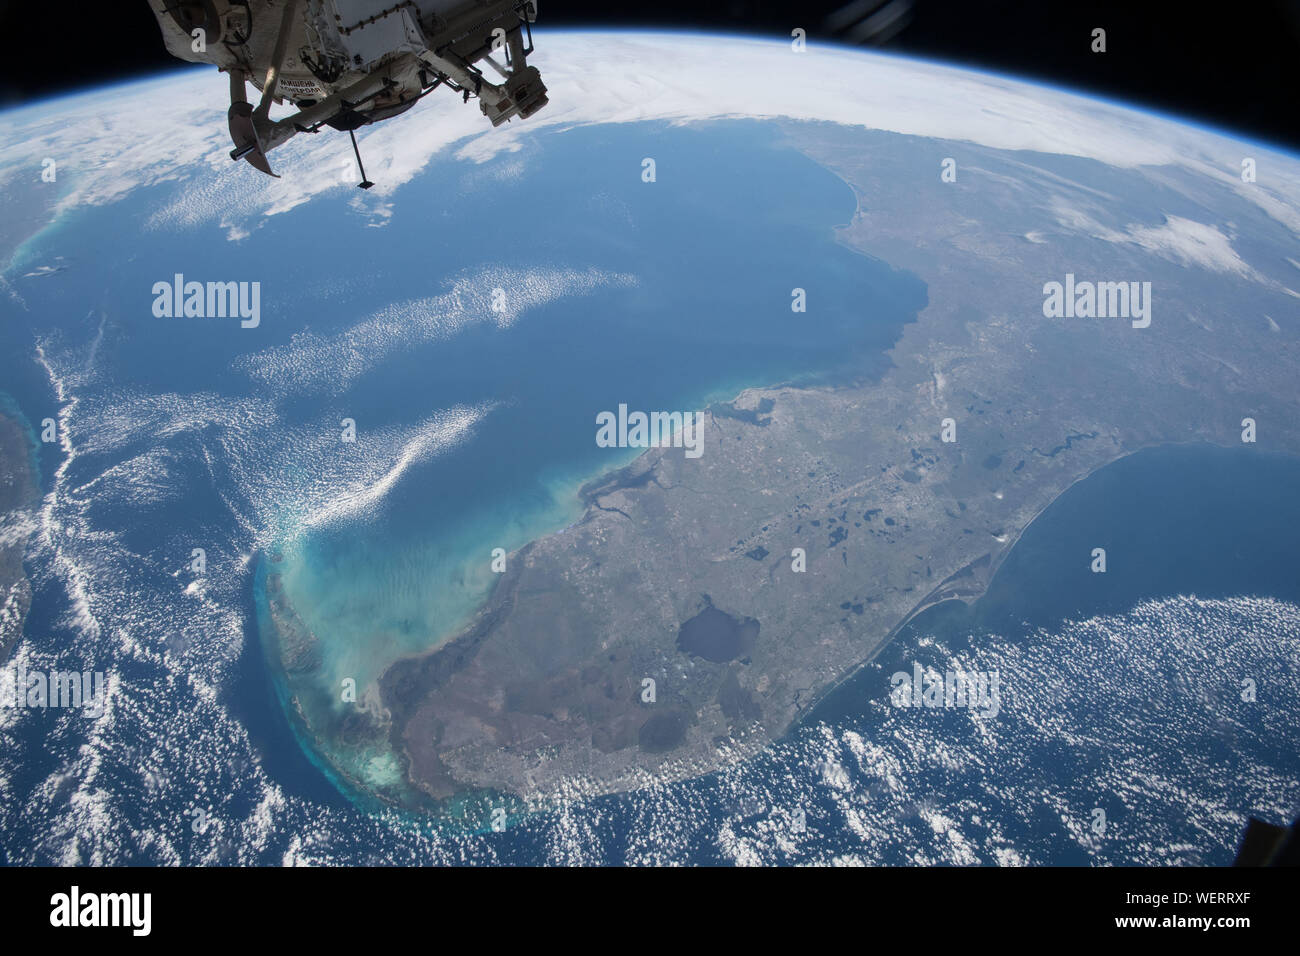 Gli Stati Uniti Stato della Florida con l intera penisola in vista come si vede dagli astronauti a bordo della Stazione Spaziale Internazionale il 7 marzo 2017 in orbita intorno alla terra. Foto Stock